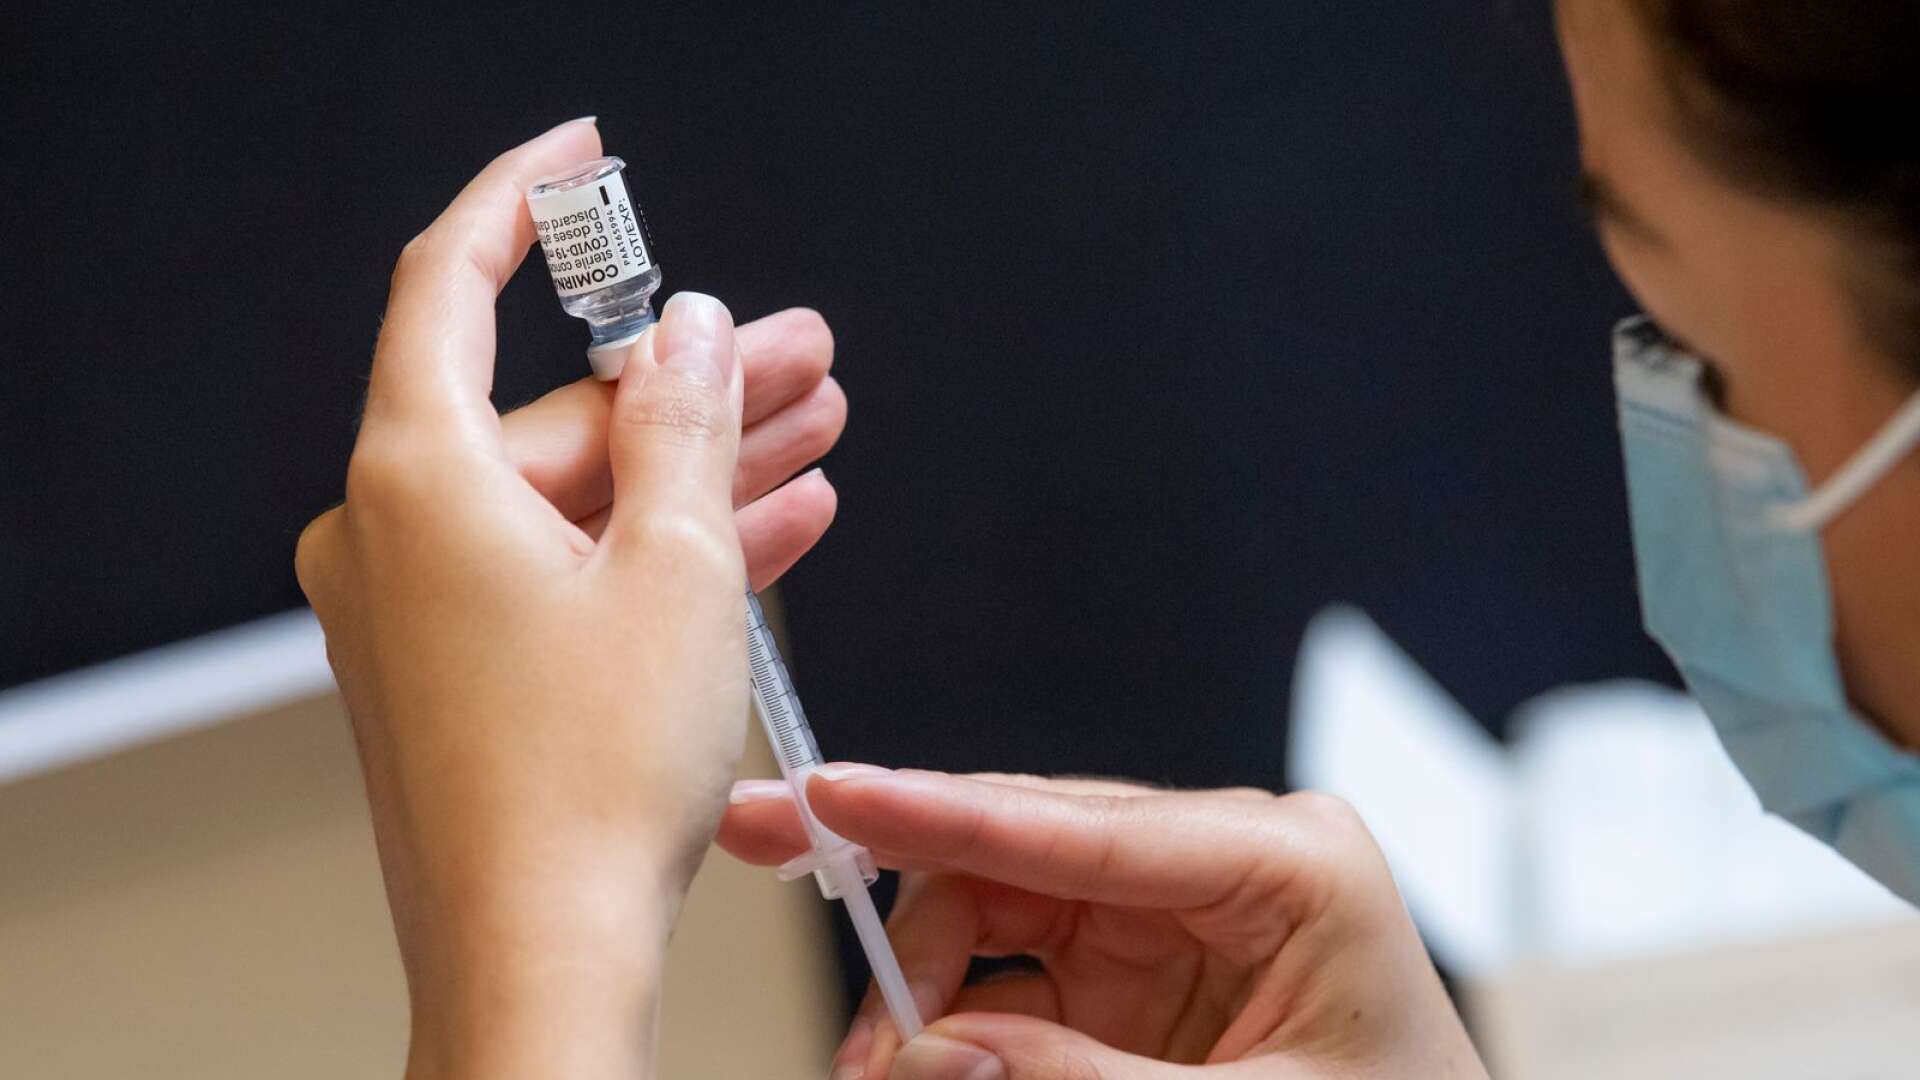 Man får vaccinera sjukvårdspersonal så länge det inte trycker undan den allmänna vaccineringen för patienter, skriver Byrån.